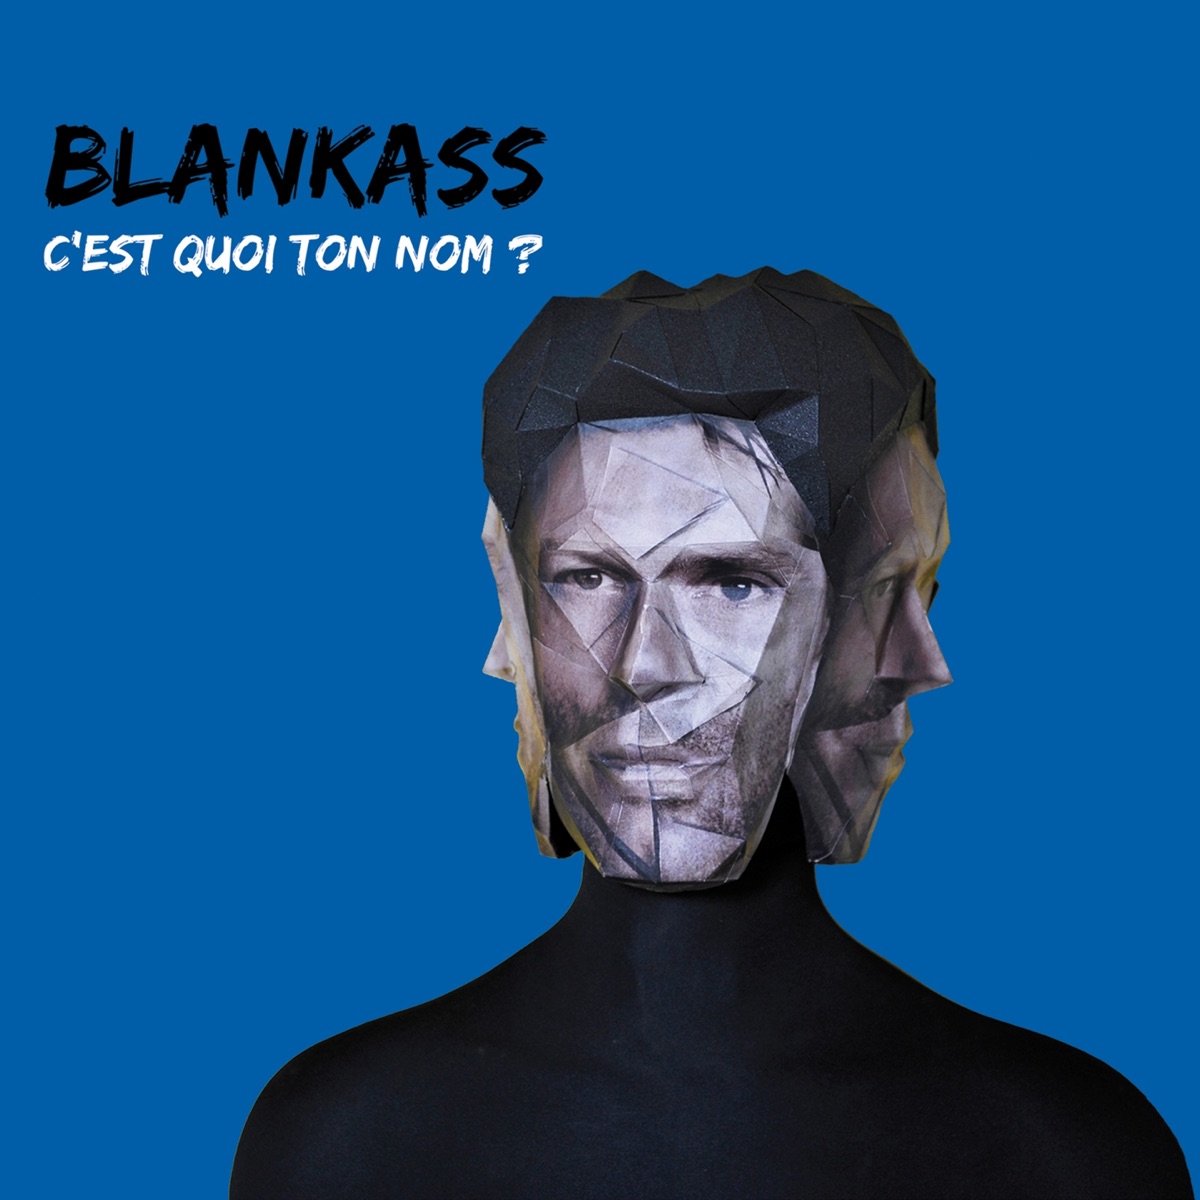 C'est quoi ton nom ? (Version deluxe) - Album by Blankass - Apple Music